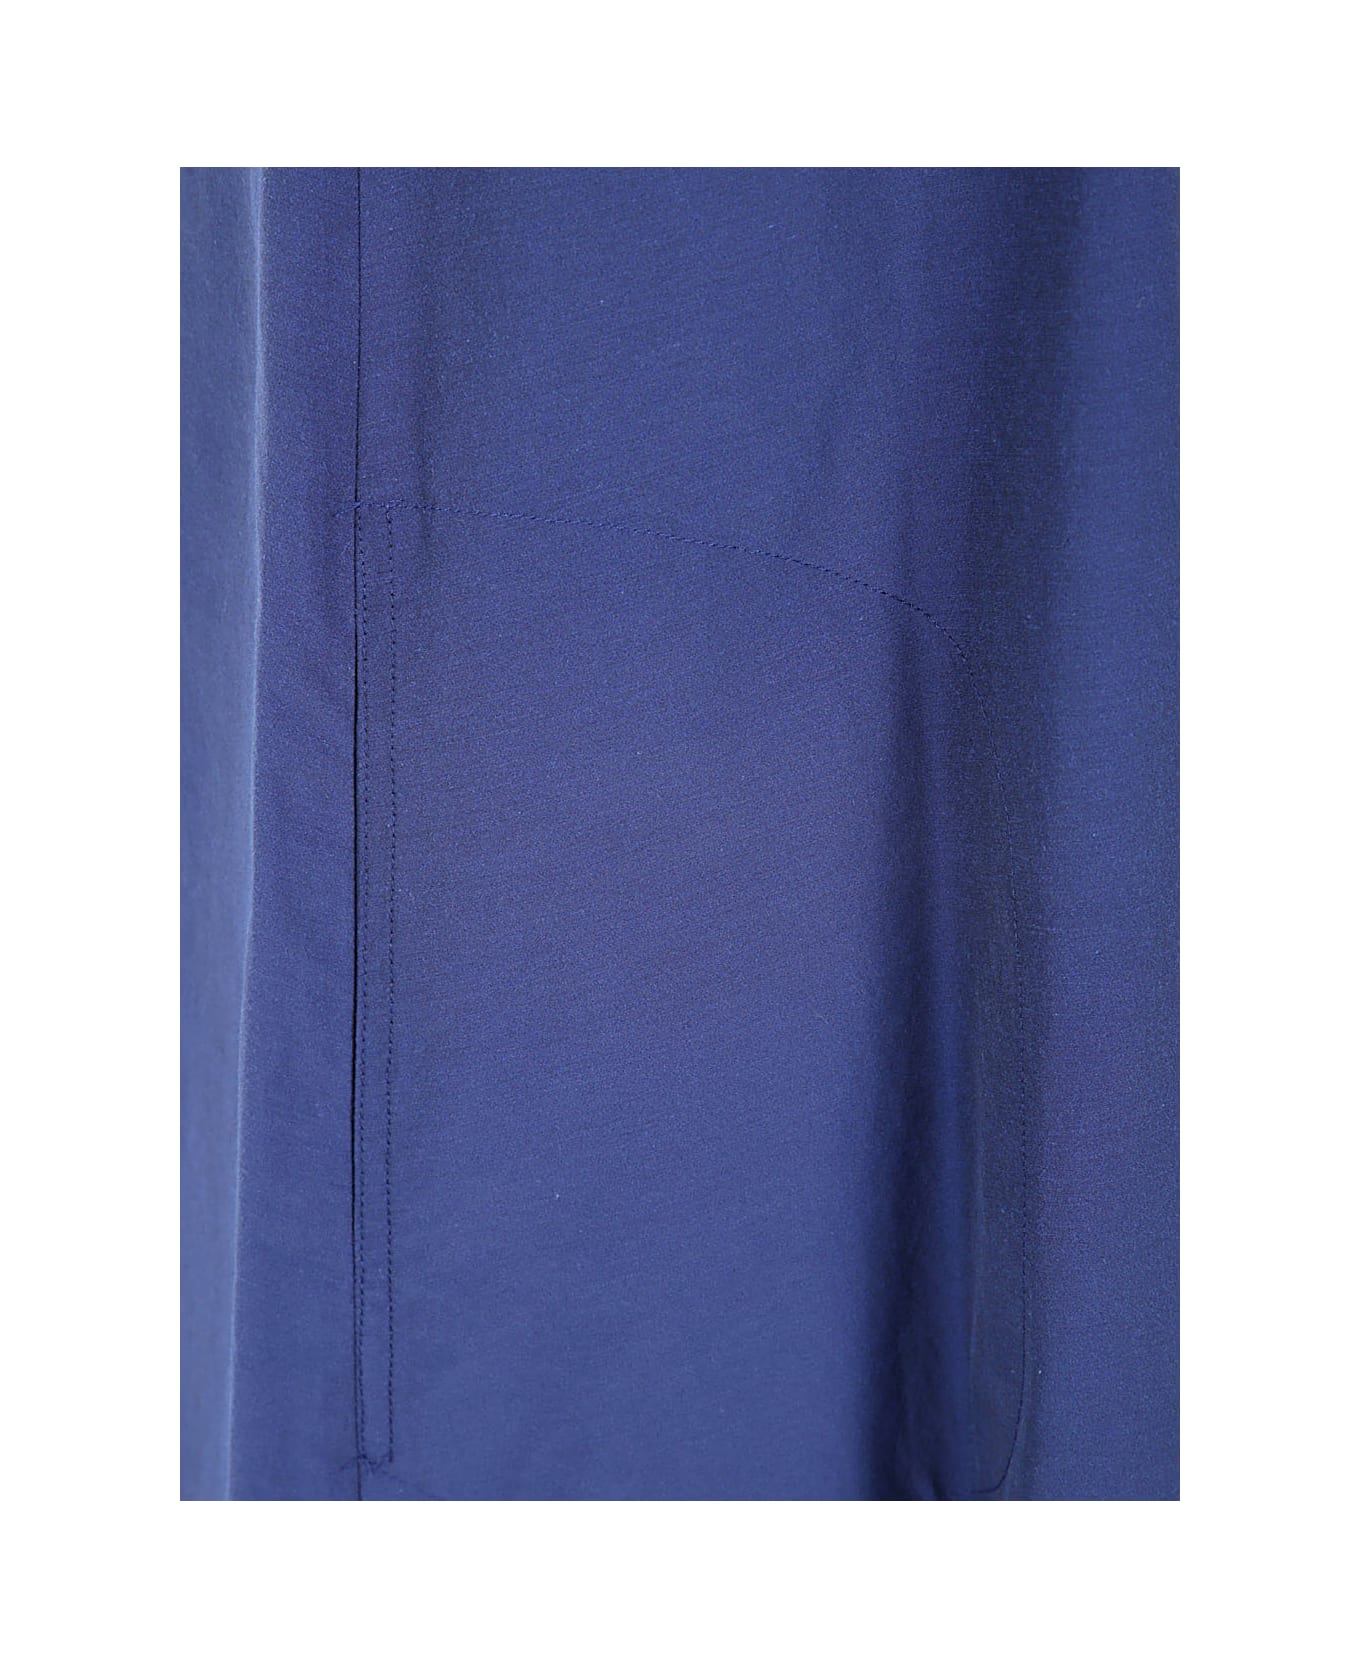 Antonelli Melania Sleeveless V Neck Dress - Blue